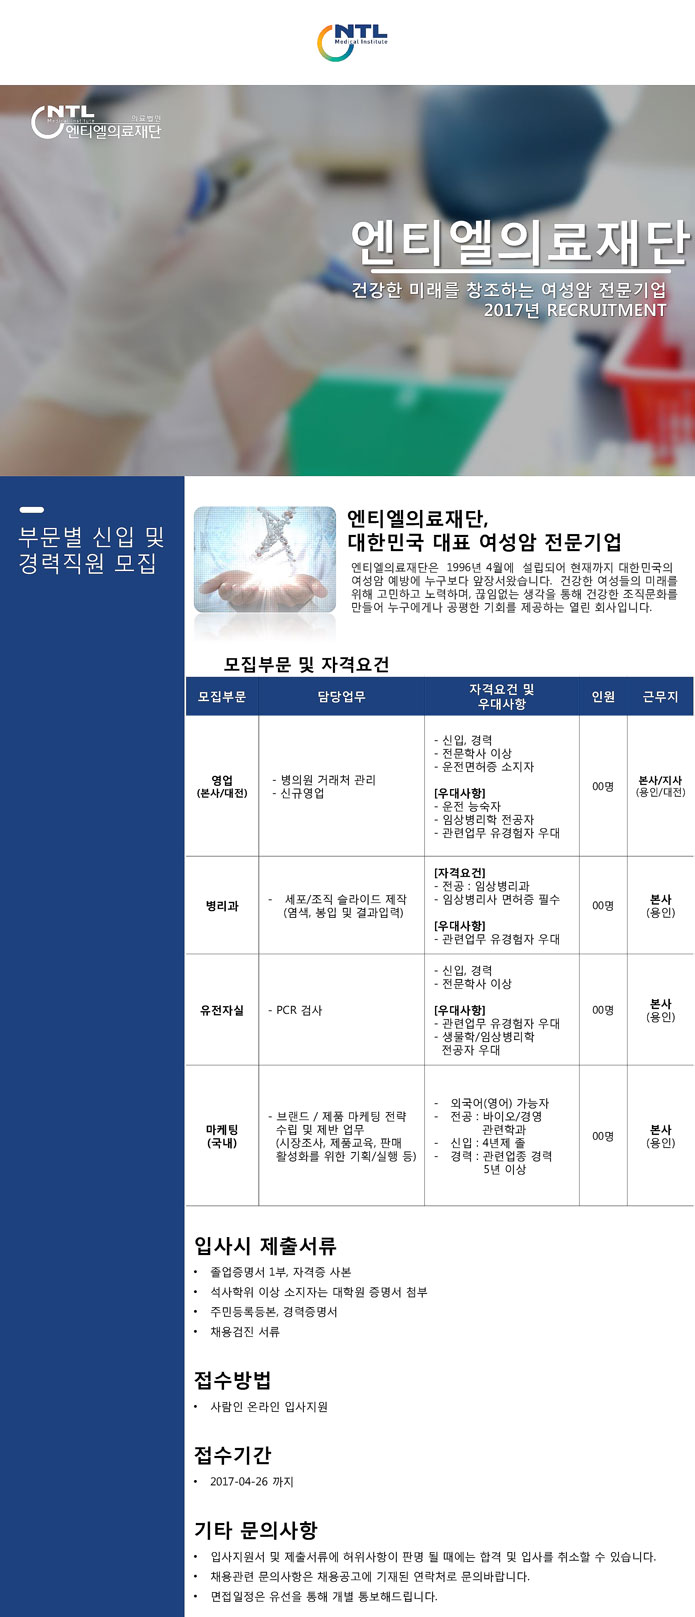 2017년 상반기 부문별 신입/경력직원 모집